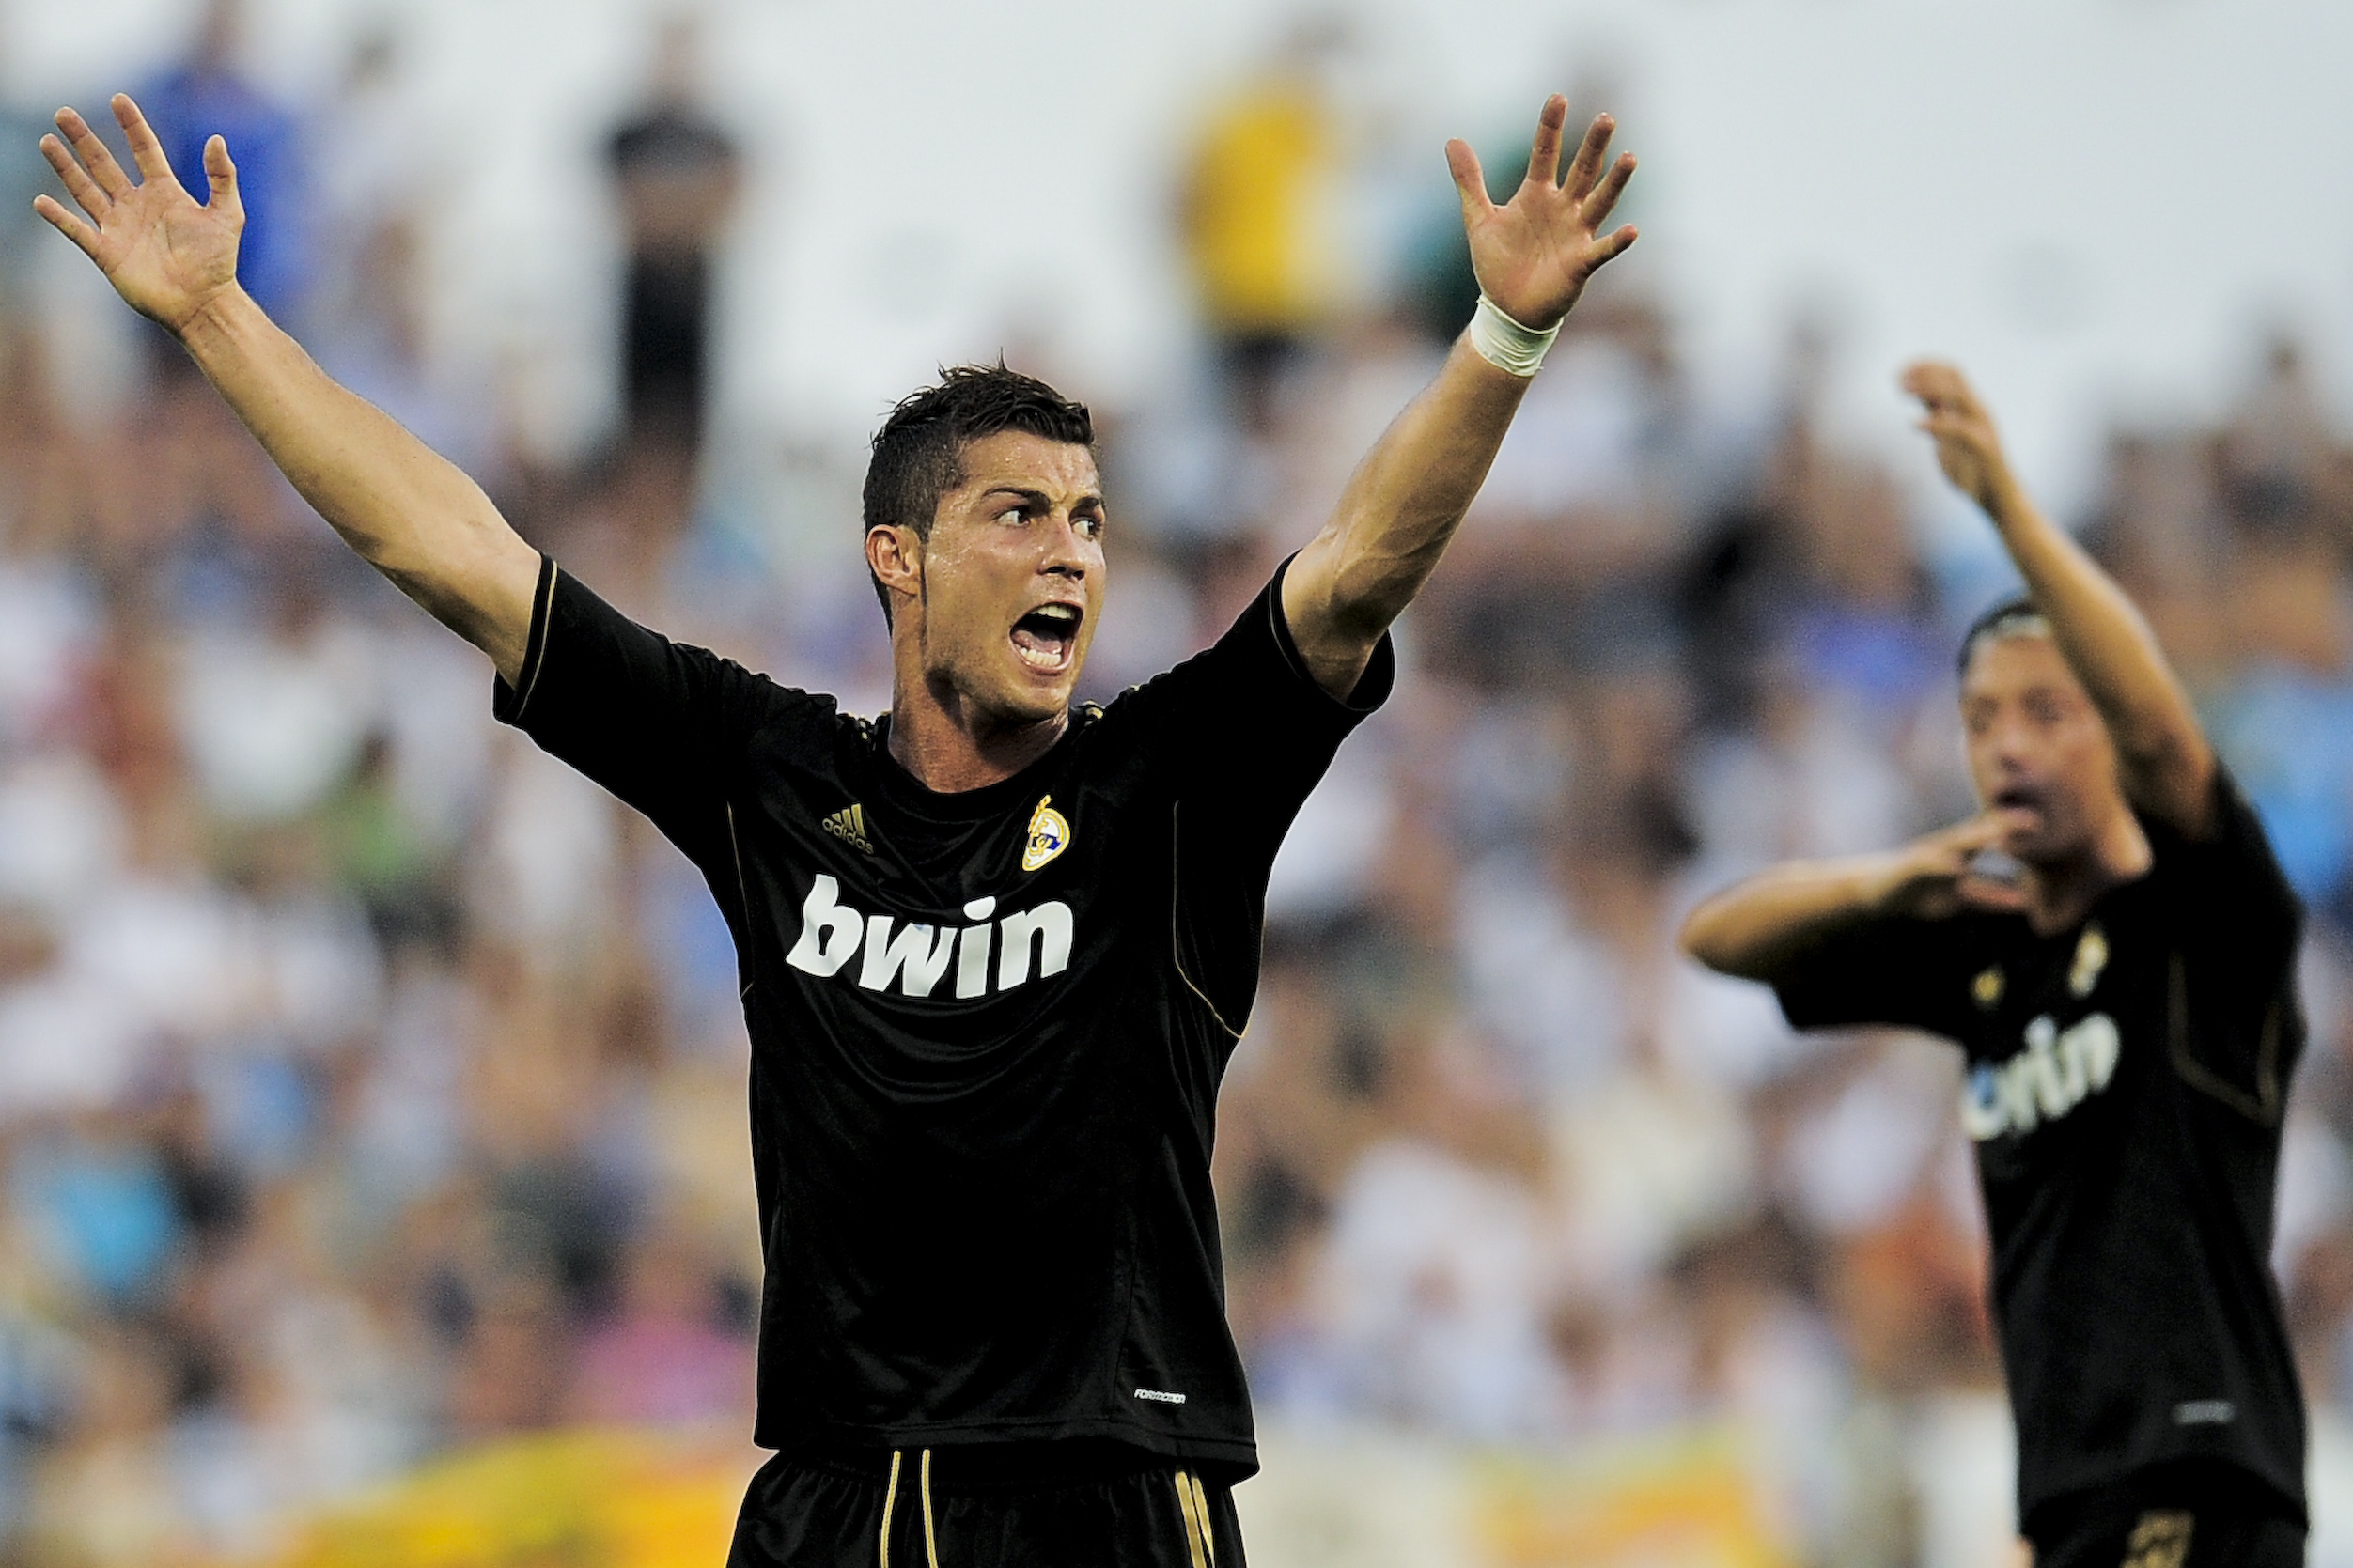 Ronaldo svarade för ett hat trick i premiären när Real Madrid krossade Zaragoza med 0-6.